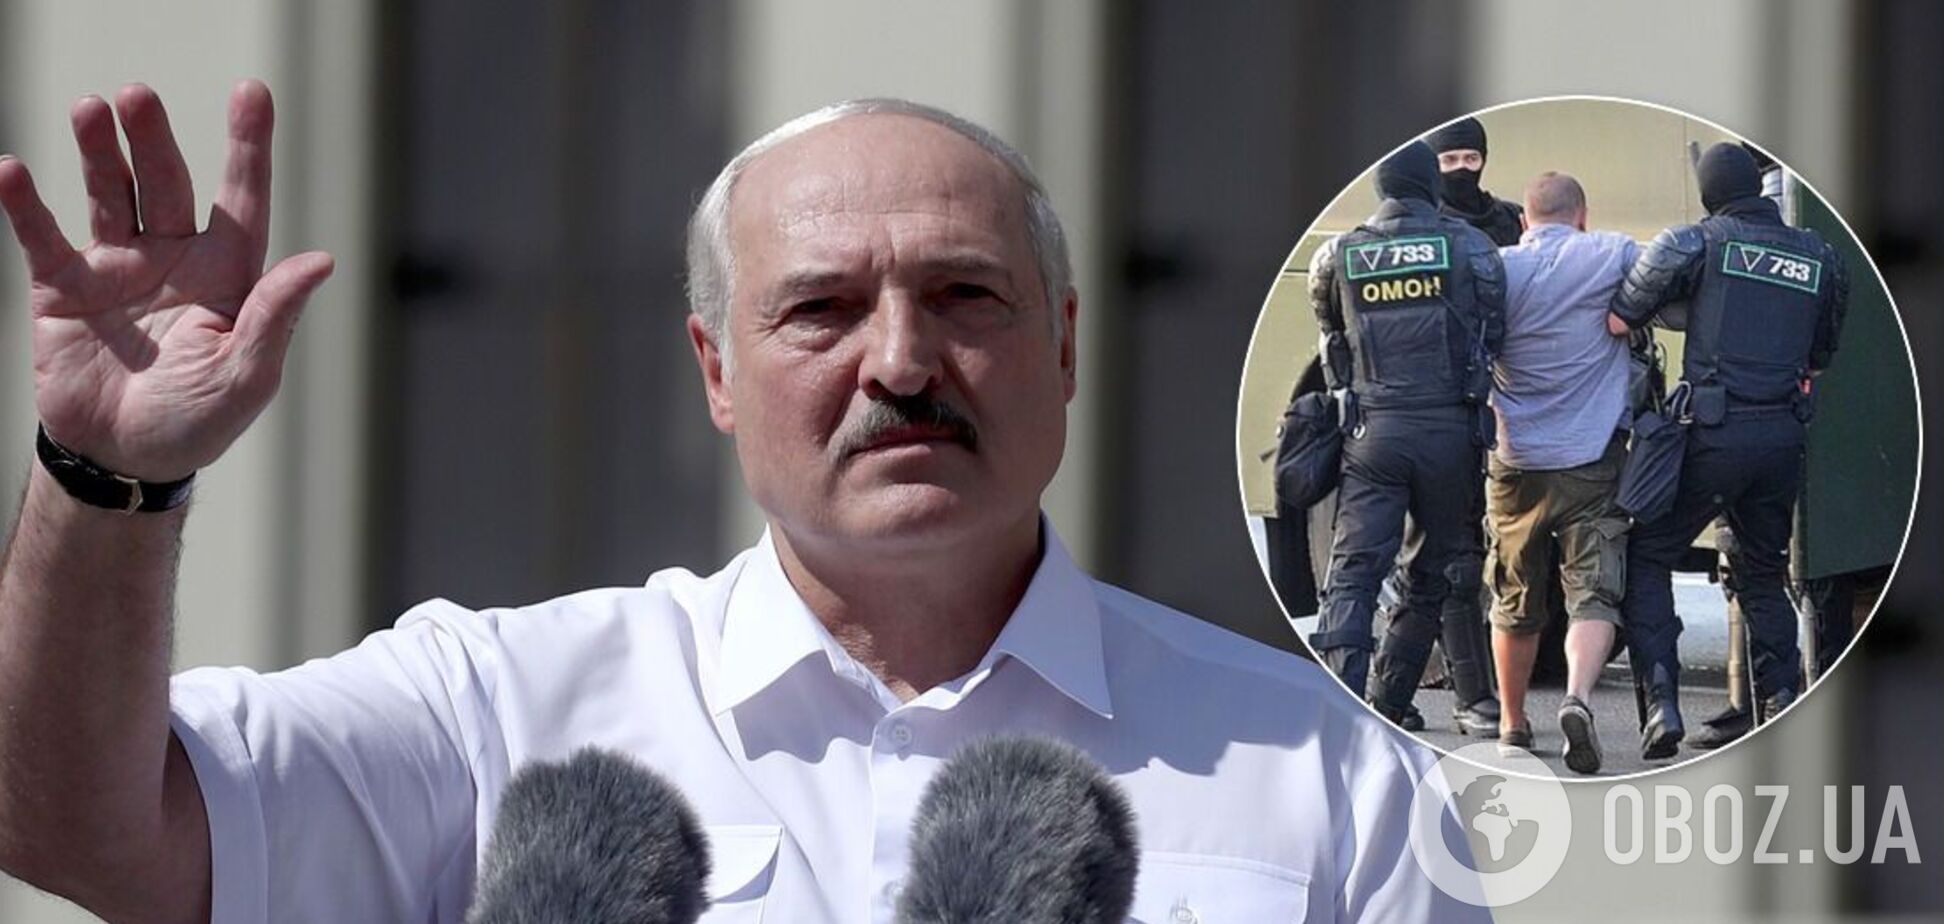 Олександр Лукашенко нагородив силовиків у розпал протестів